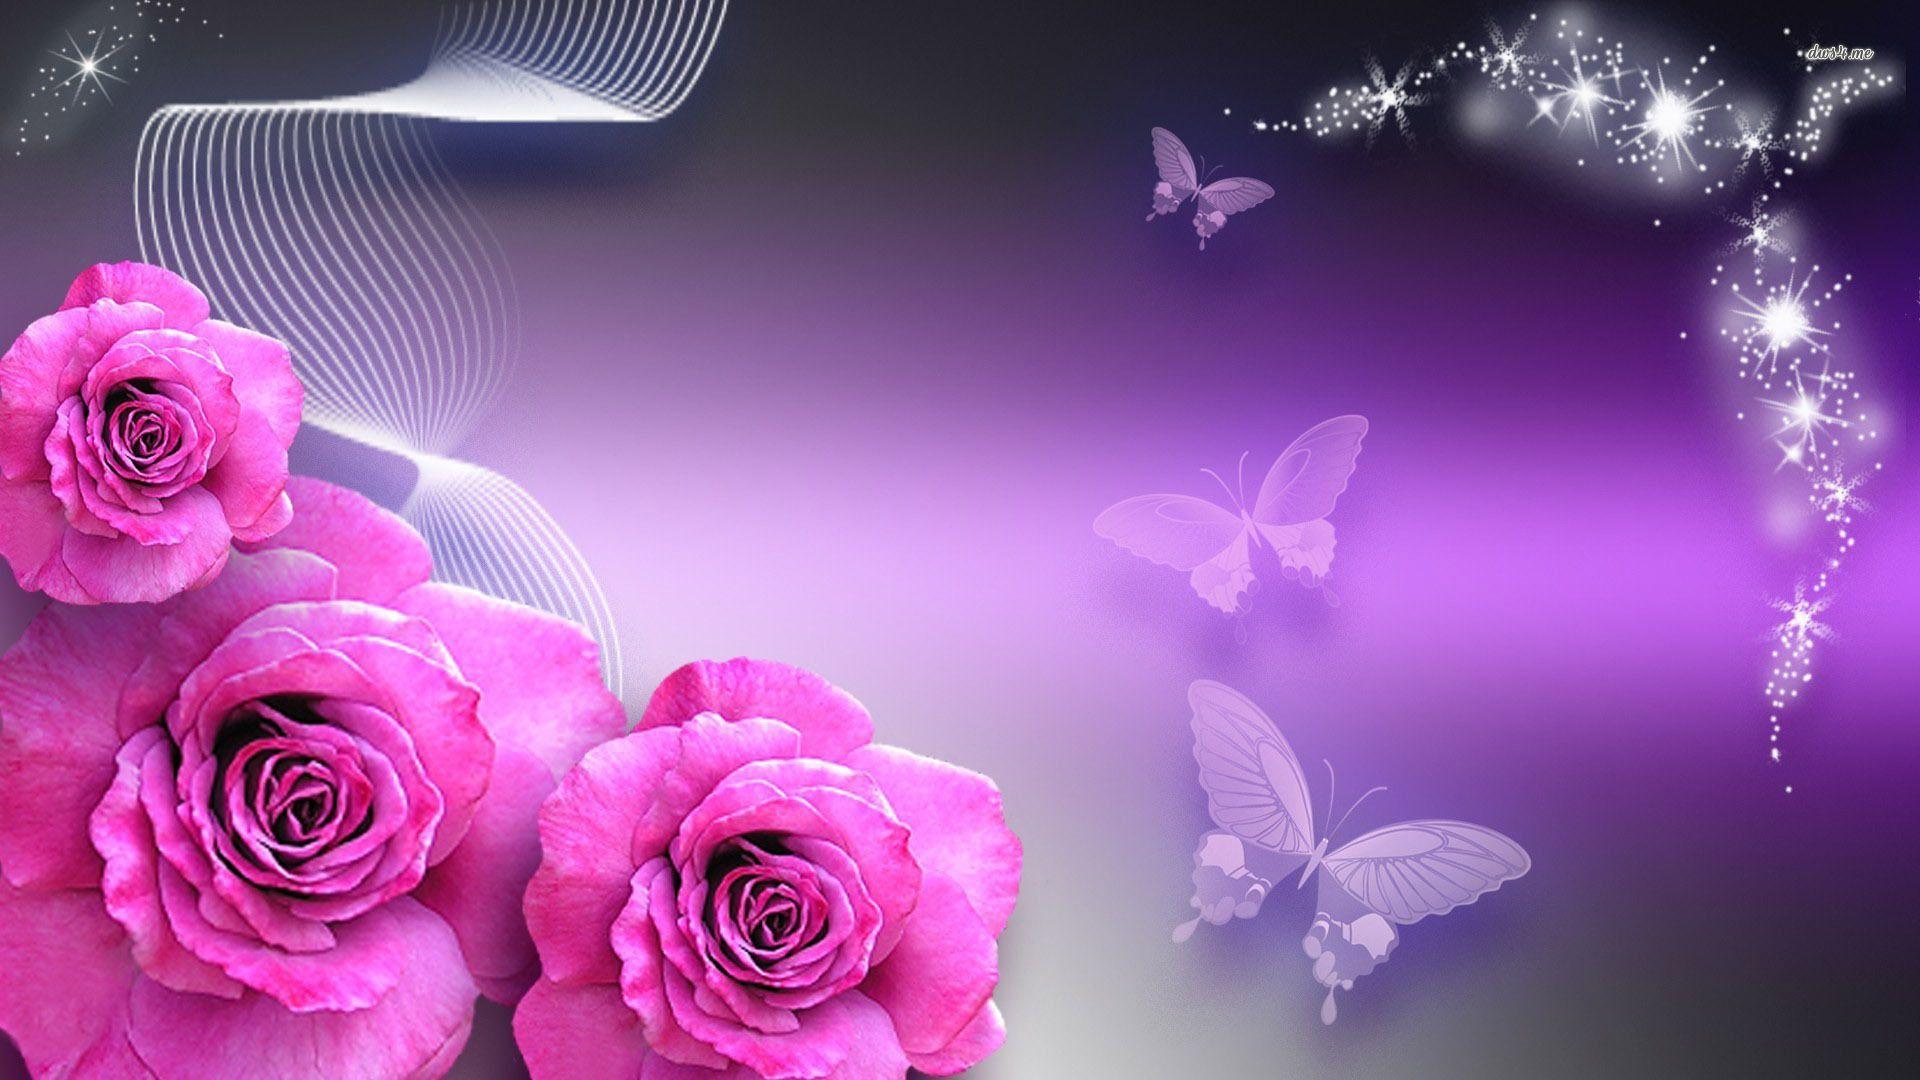 Butterflies & Rosebuds Butterflies And Pink Roses 1920x1080 Digital Art. Pink Rose Wallpaper Hd, Purple Roses Wallpaper, Rose Wallpaper